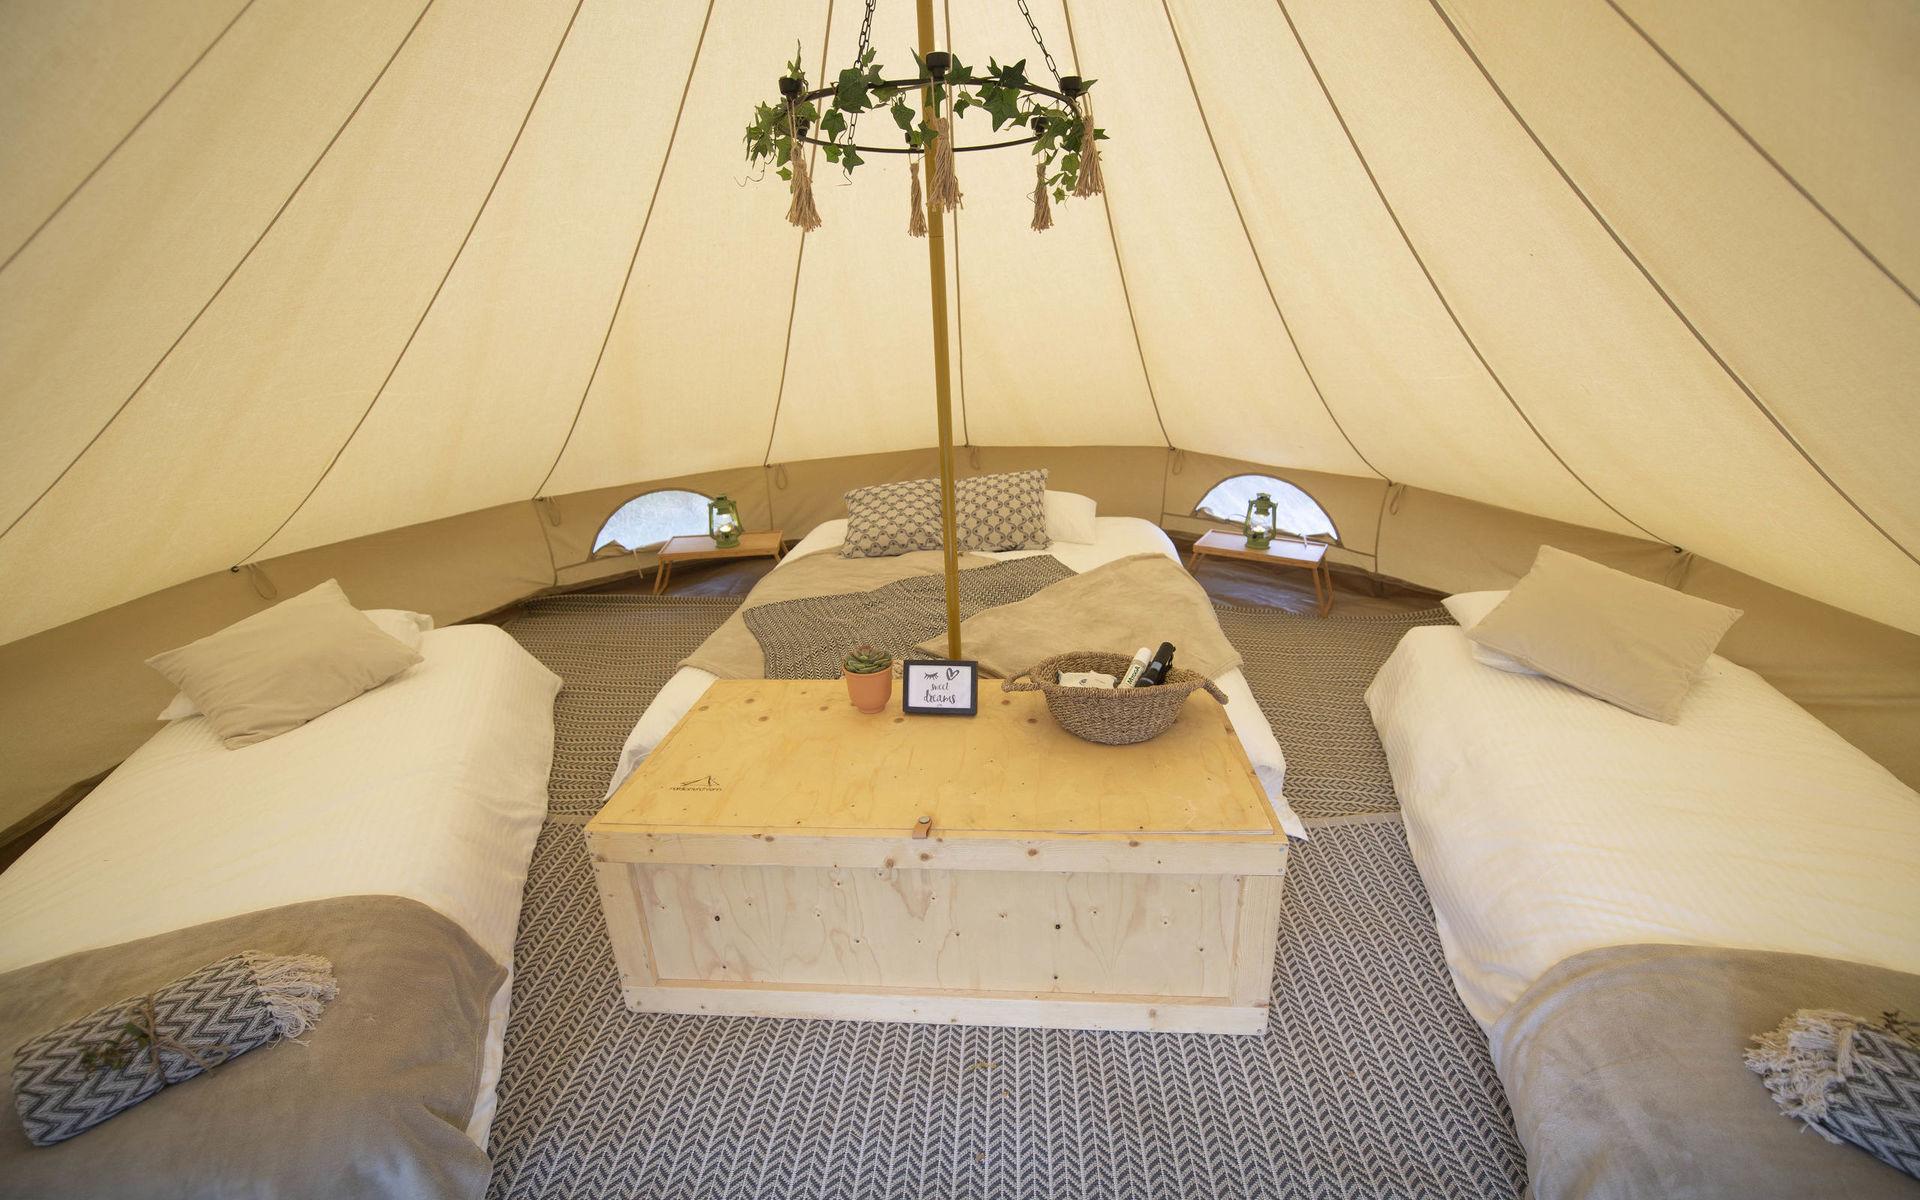 Inuti ser tälten nästan ut som sovrum med mattor, sängar och annan inredning. 